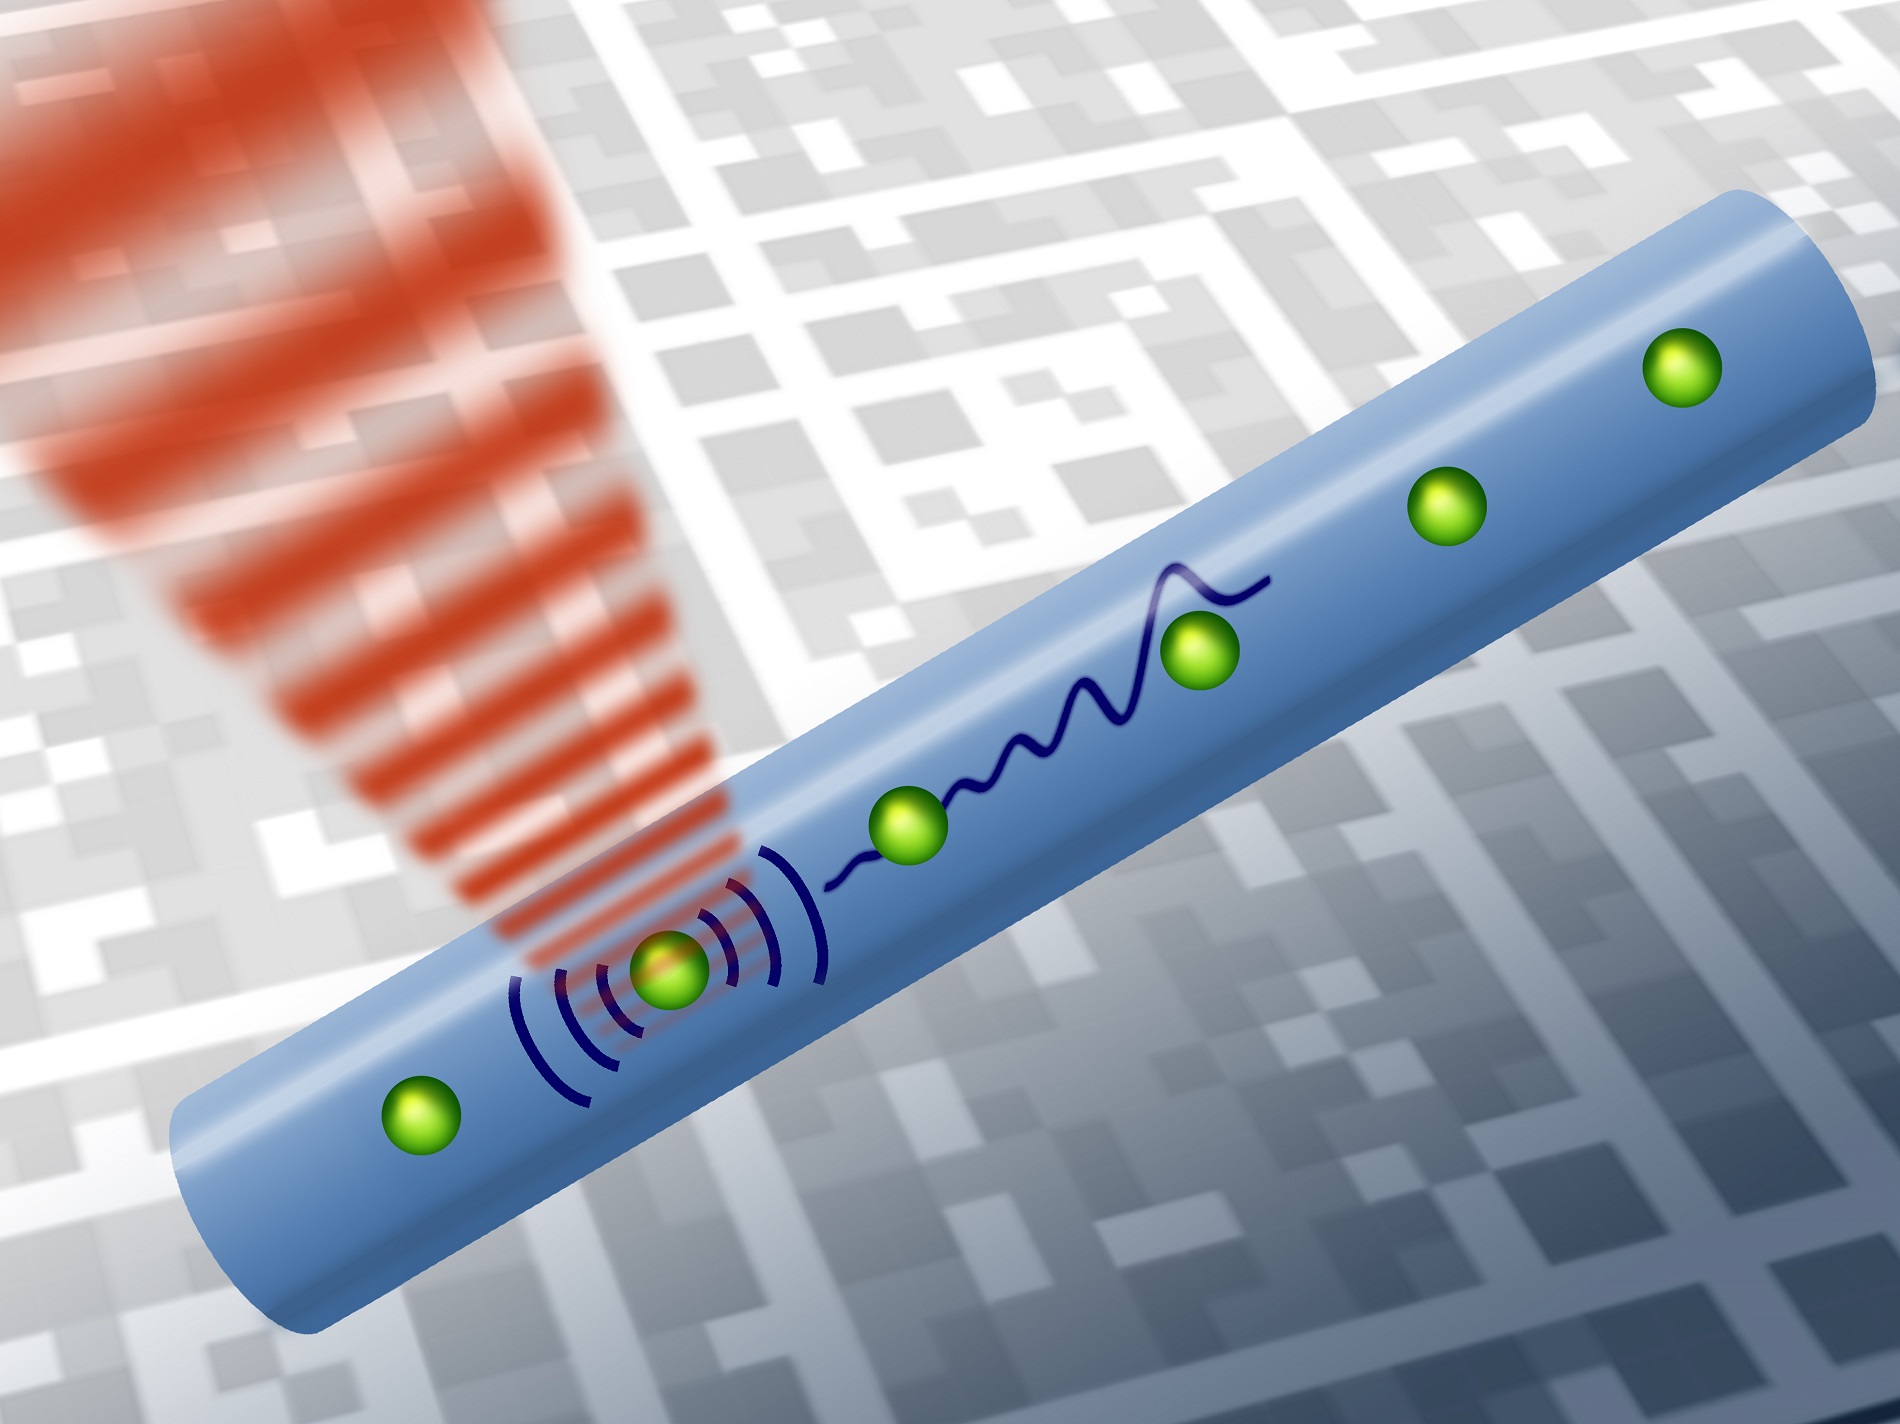 Transferring quantum information using sound